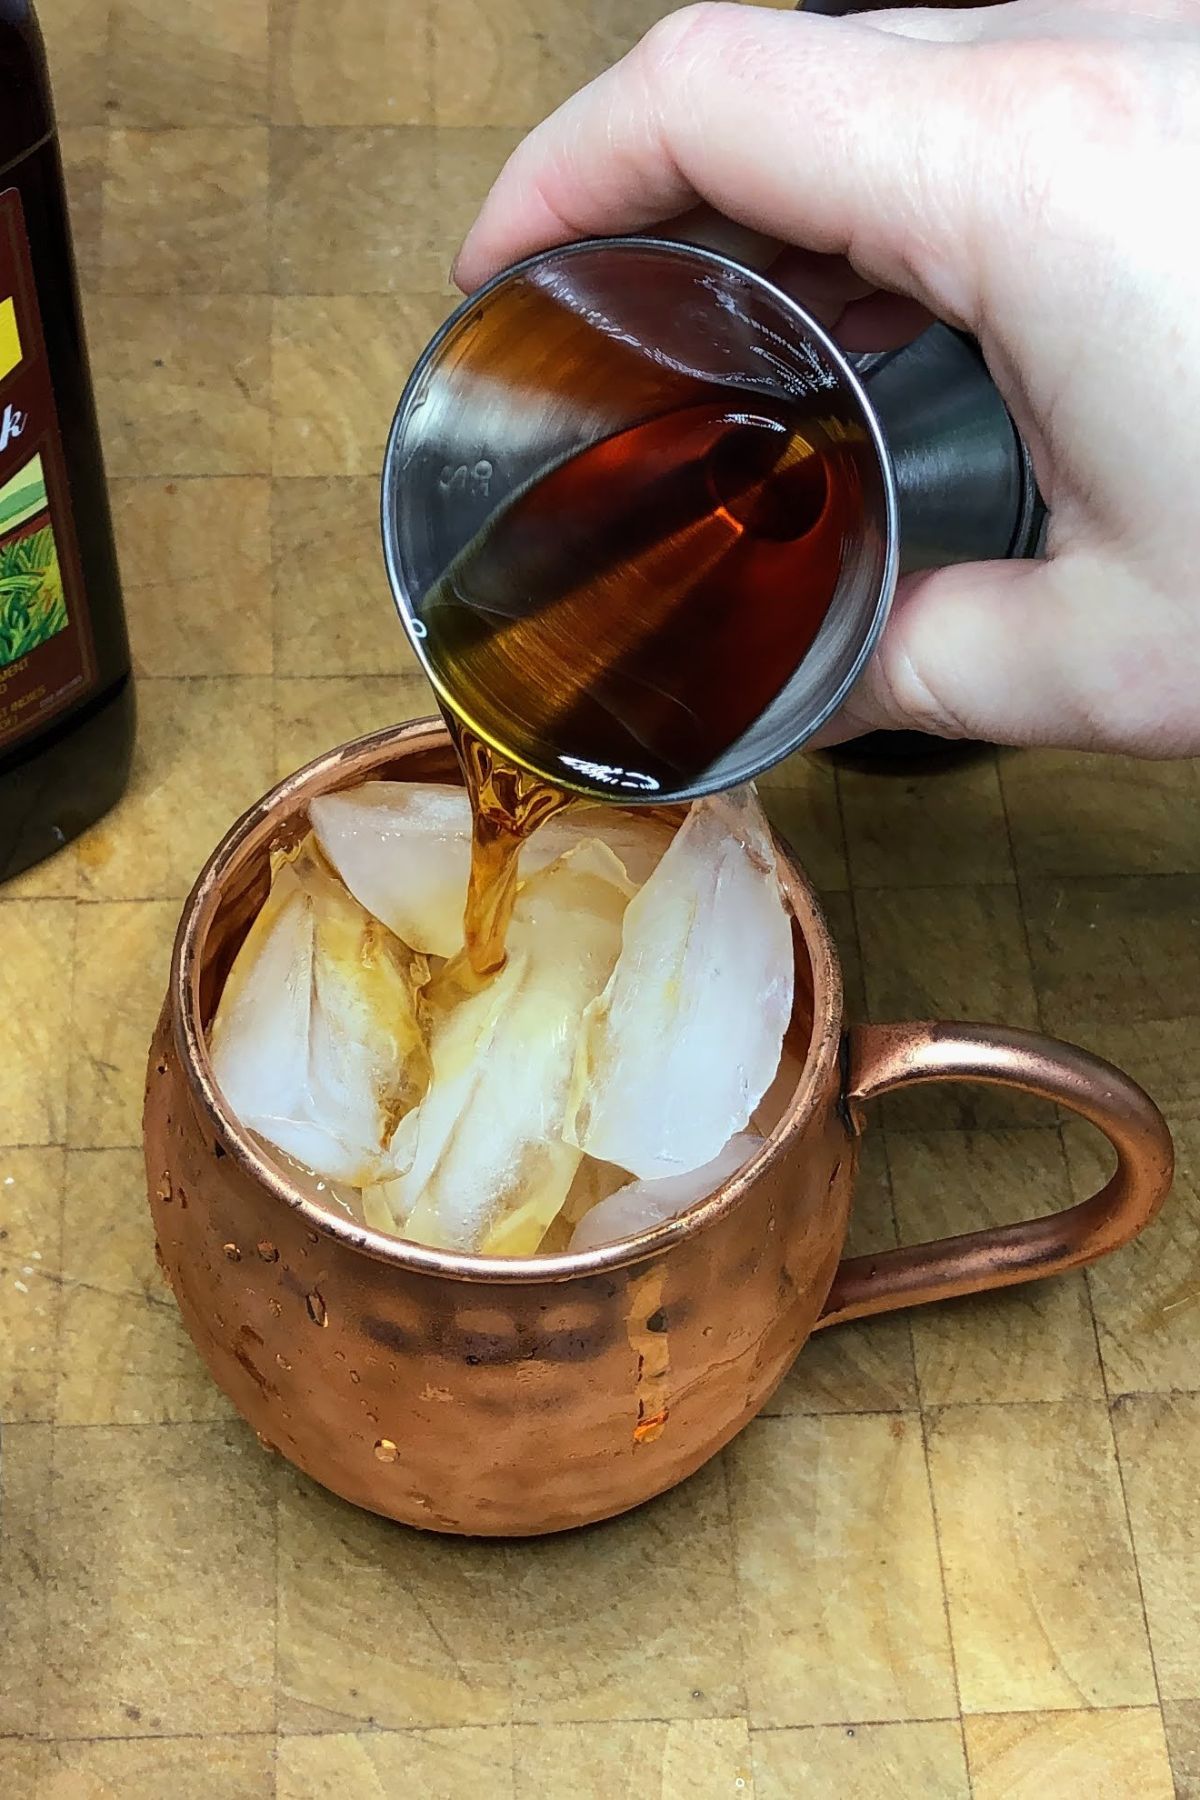 Pouring jamaican rum into a mug.